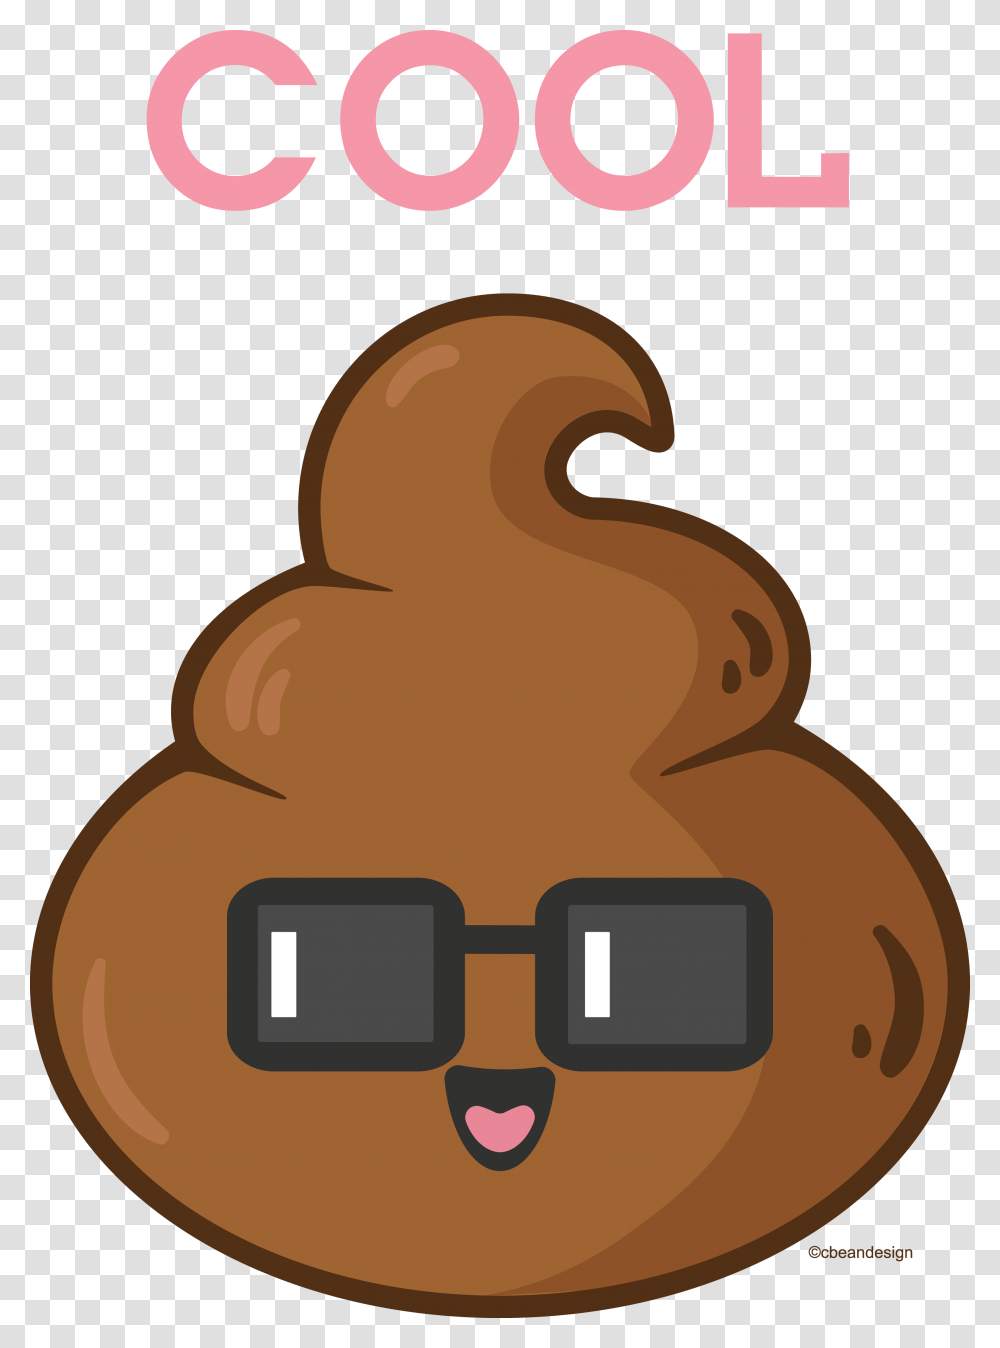 One Cool Poo Tootie Poop Emoji Emoji And Cool Stuff, Sweets, Food, Cookie Transparent Png